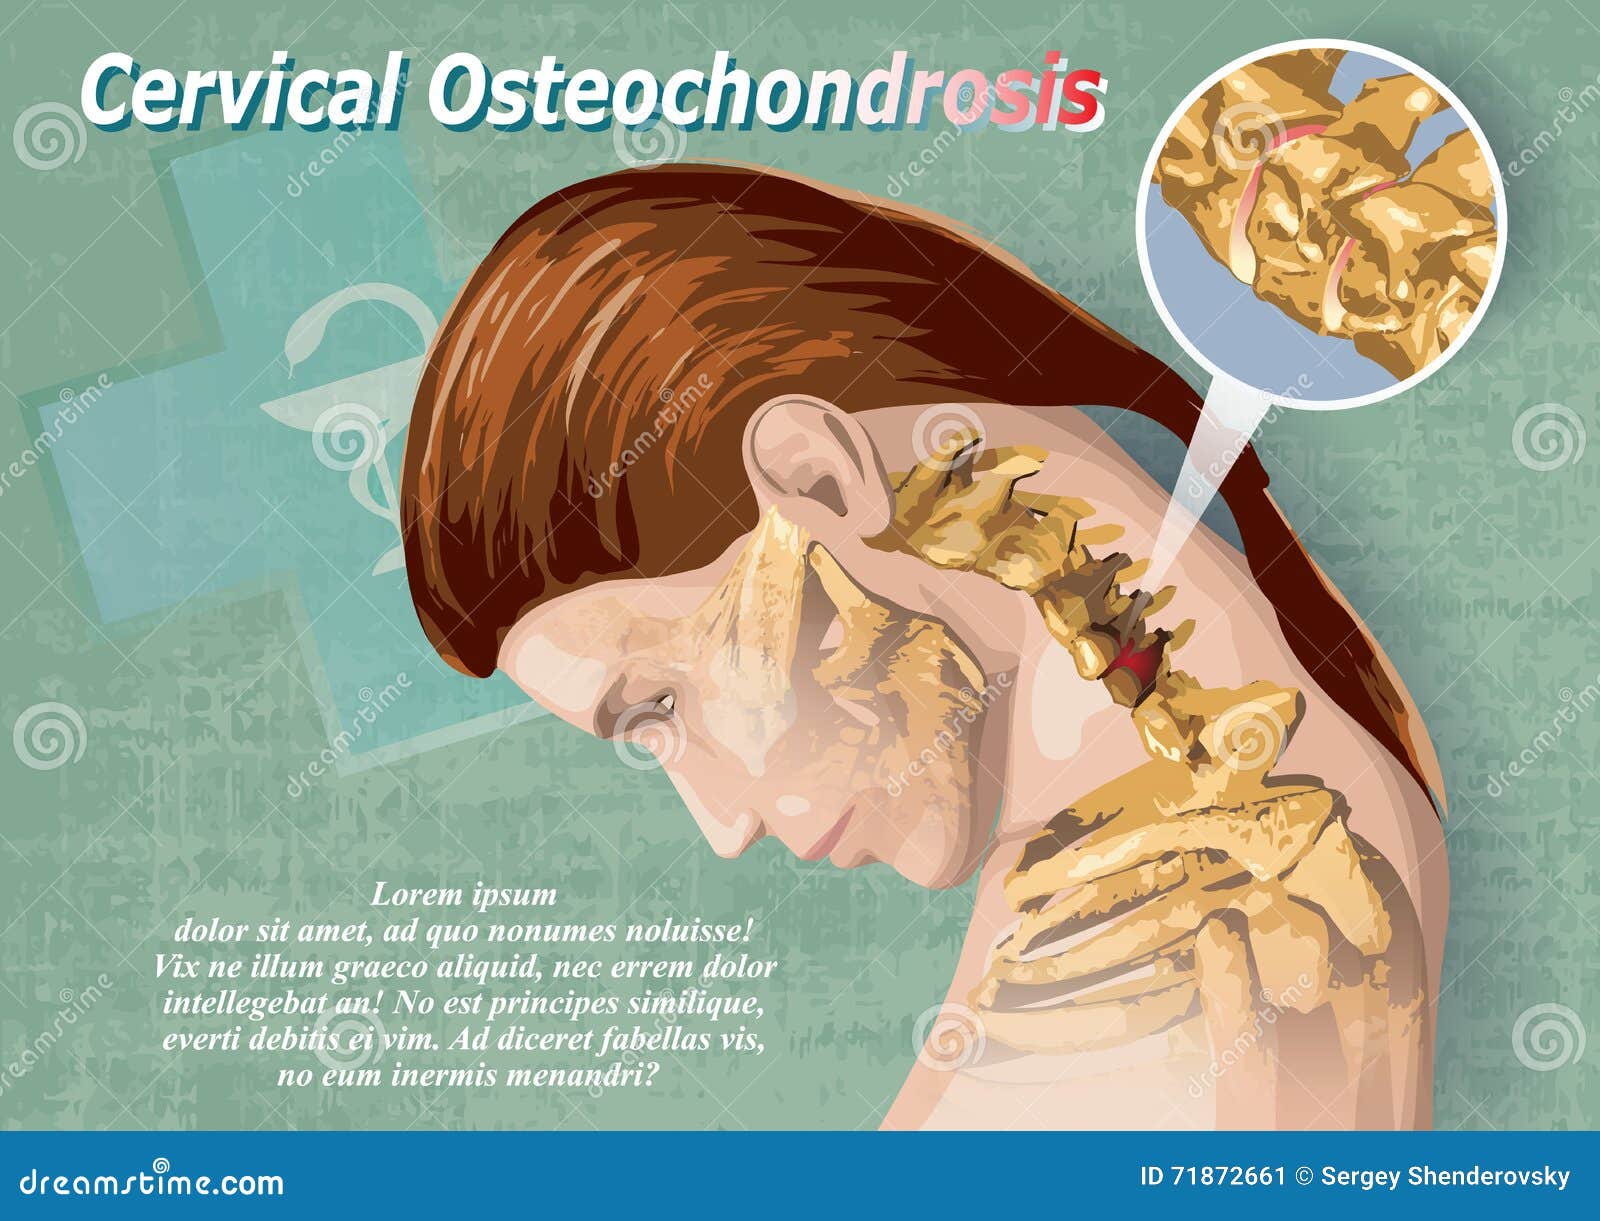 széles körben elterjedt osteochondrosis)